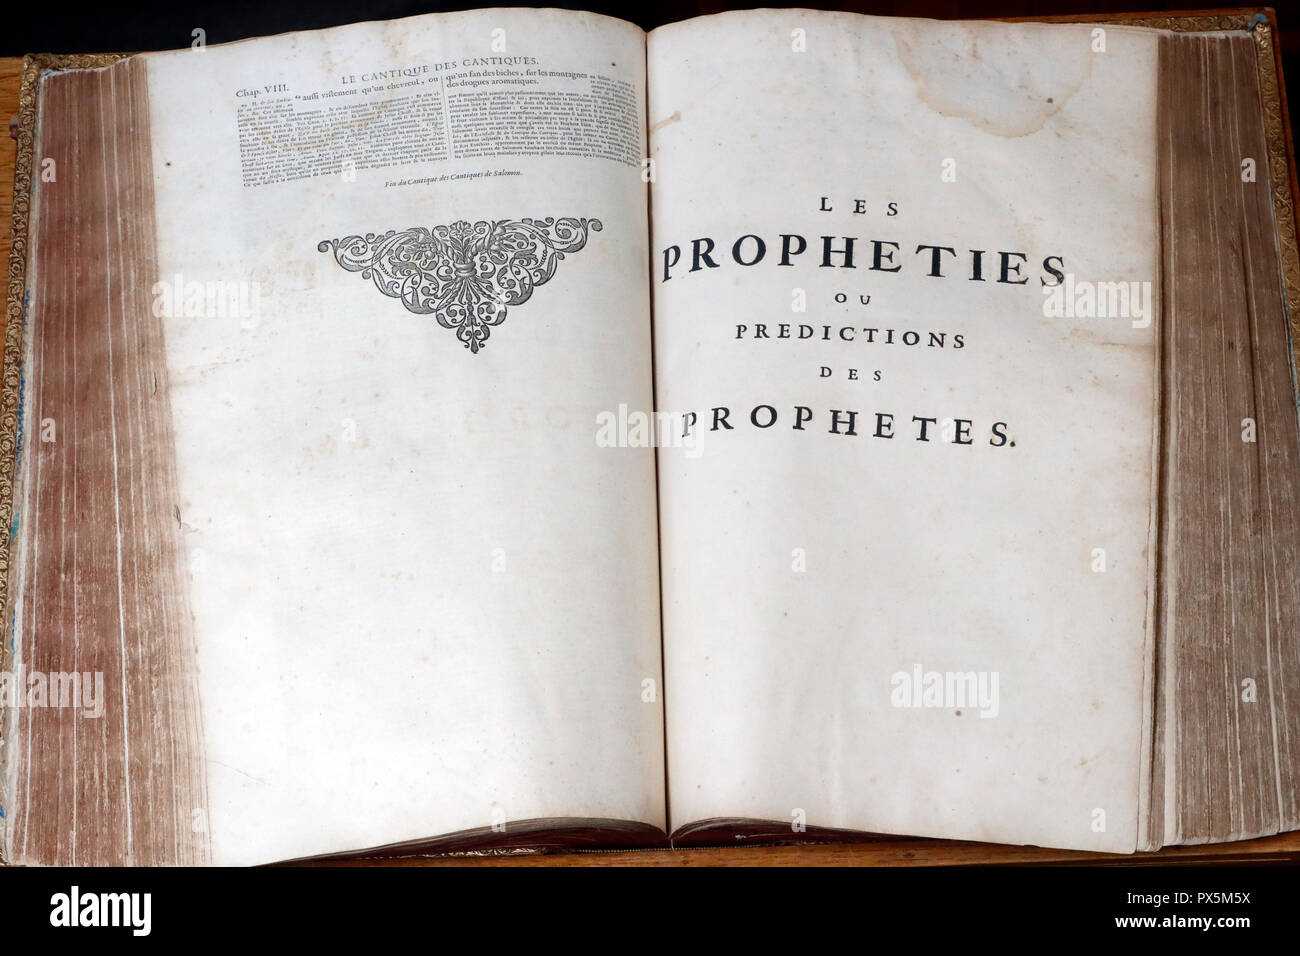 Alte Bibel in französischer Sprache, 1669. Alten Testament. Stockfoto